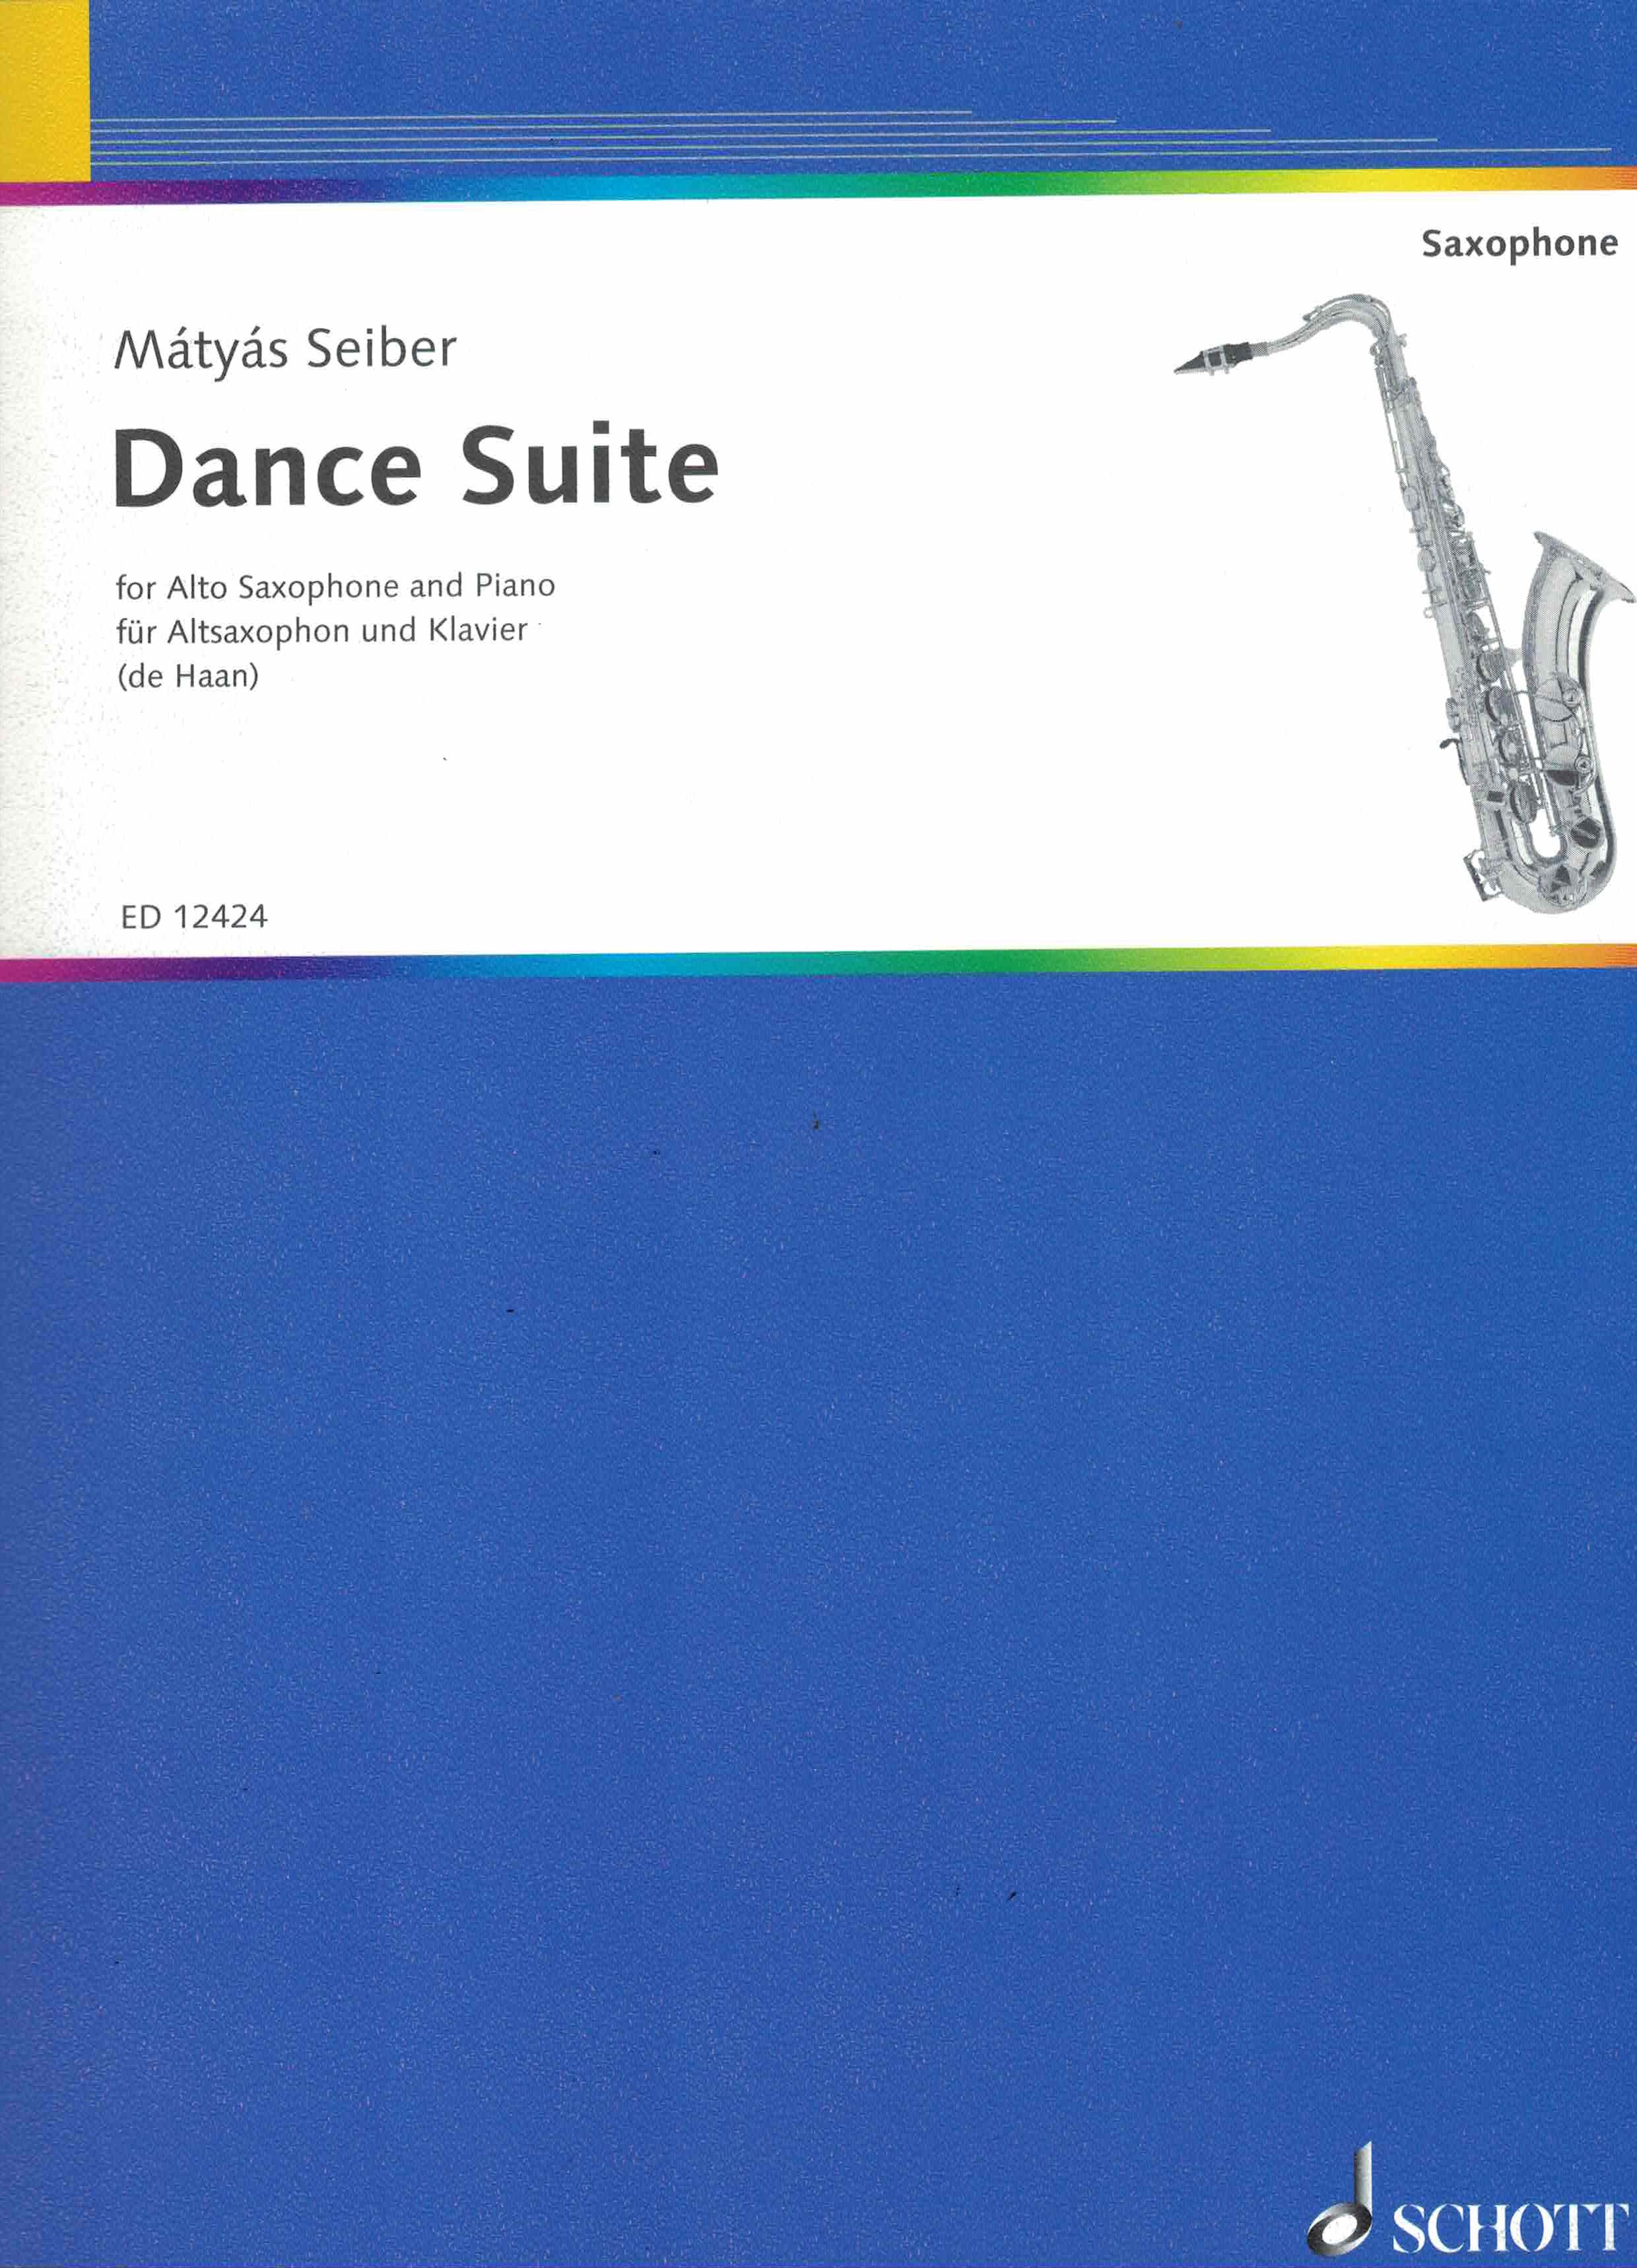 Dance Suite - Seiber, Altsaxophon/Klavier